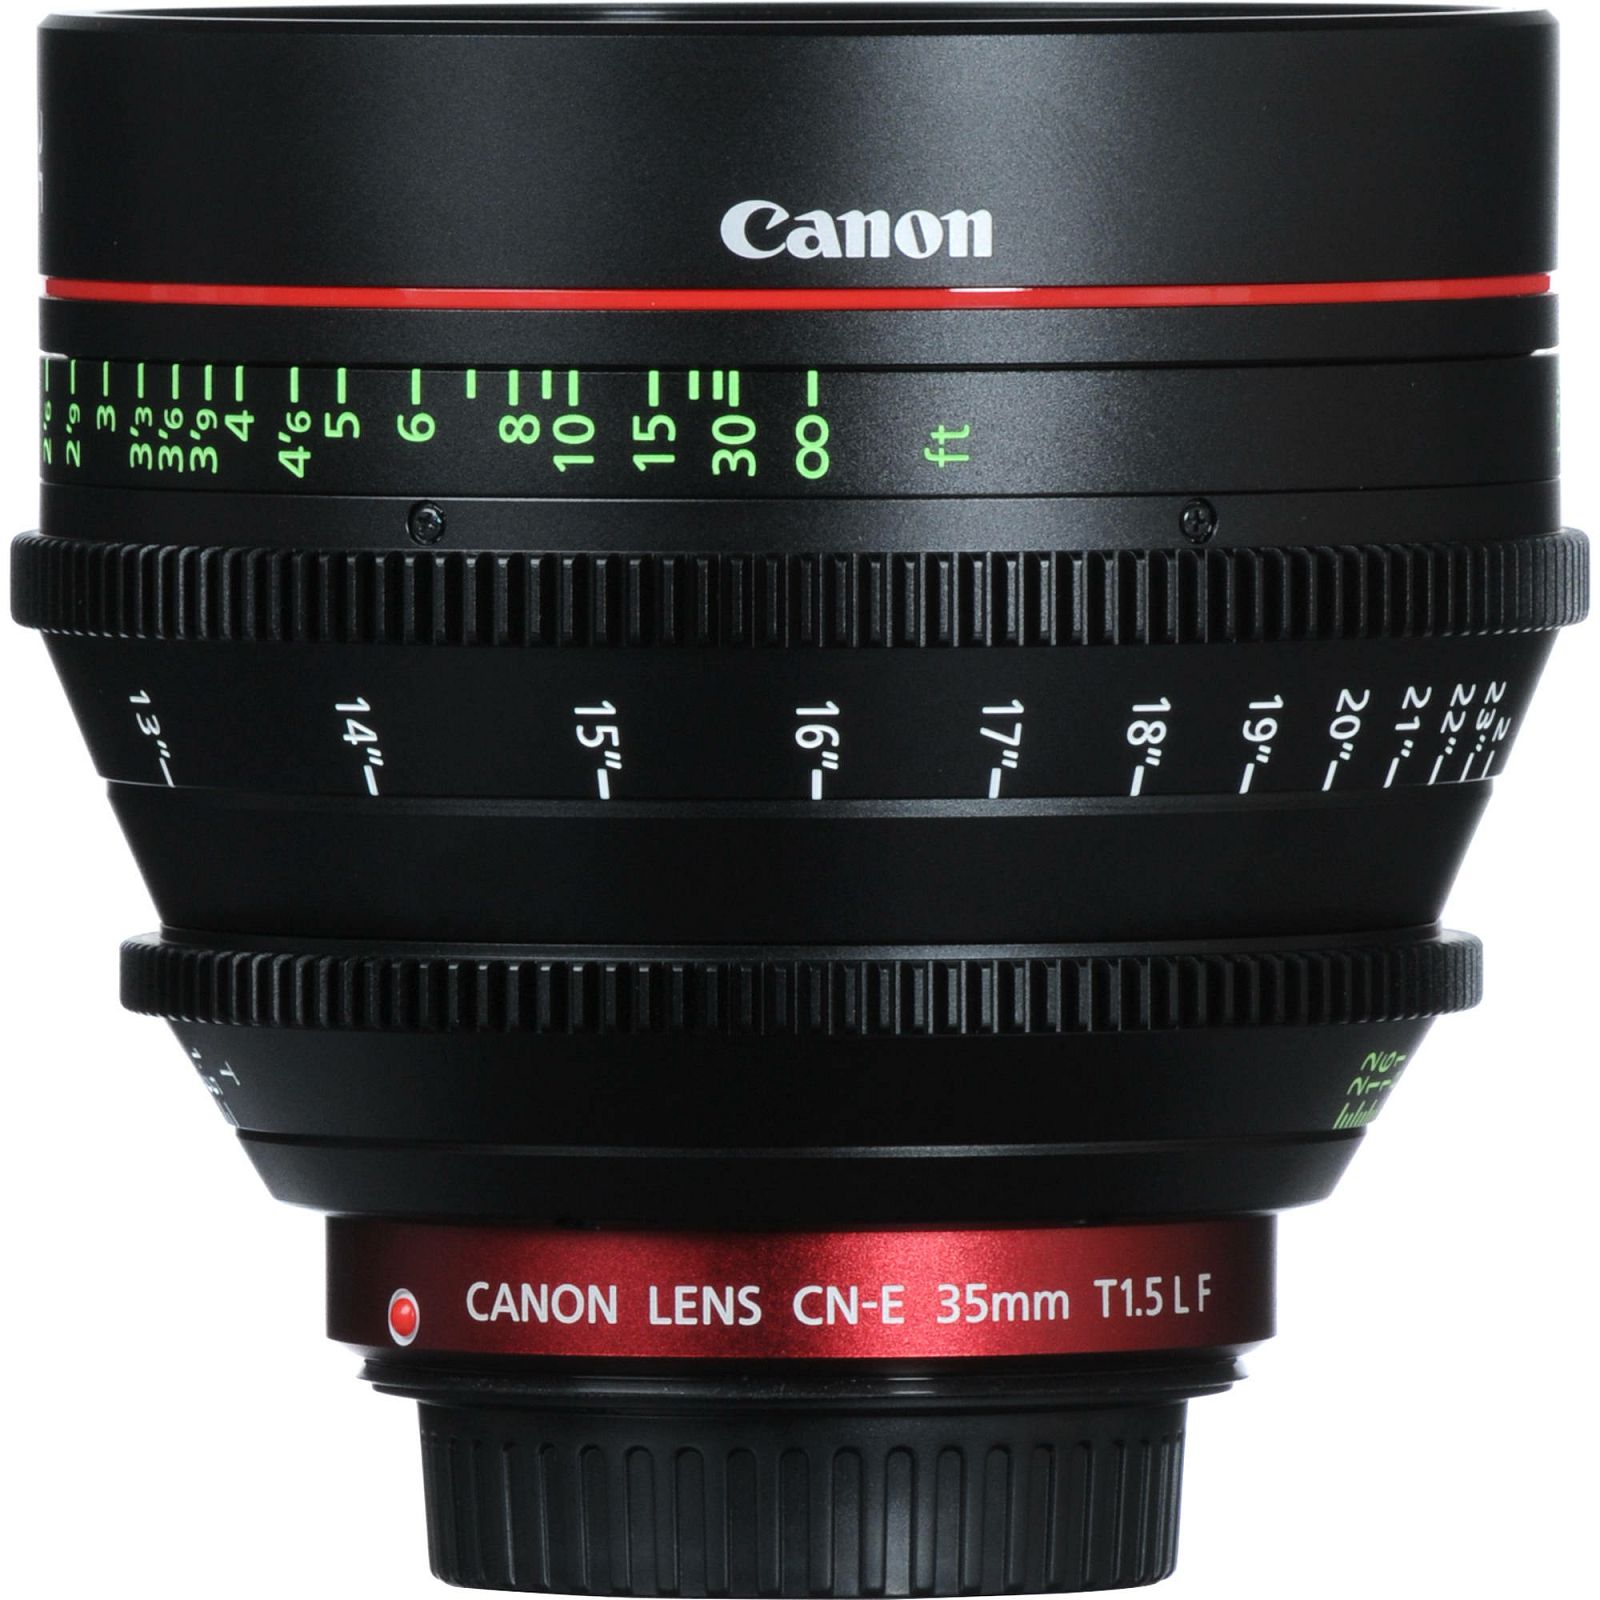 Canon CN-E 35mm F1.5 L F Wide-Angle Cinema Prime Cine Lens širokokutni filmski objektiv fiksne žarišne duljine (9139B002AC)